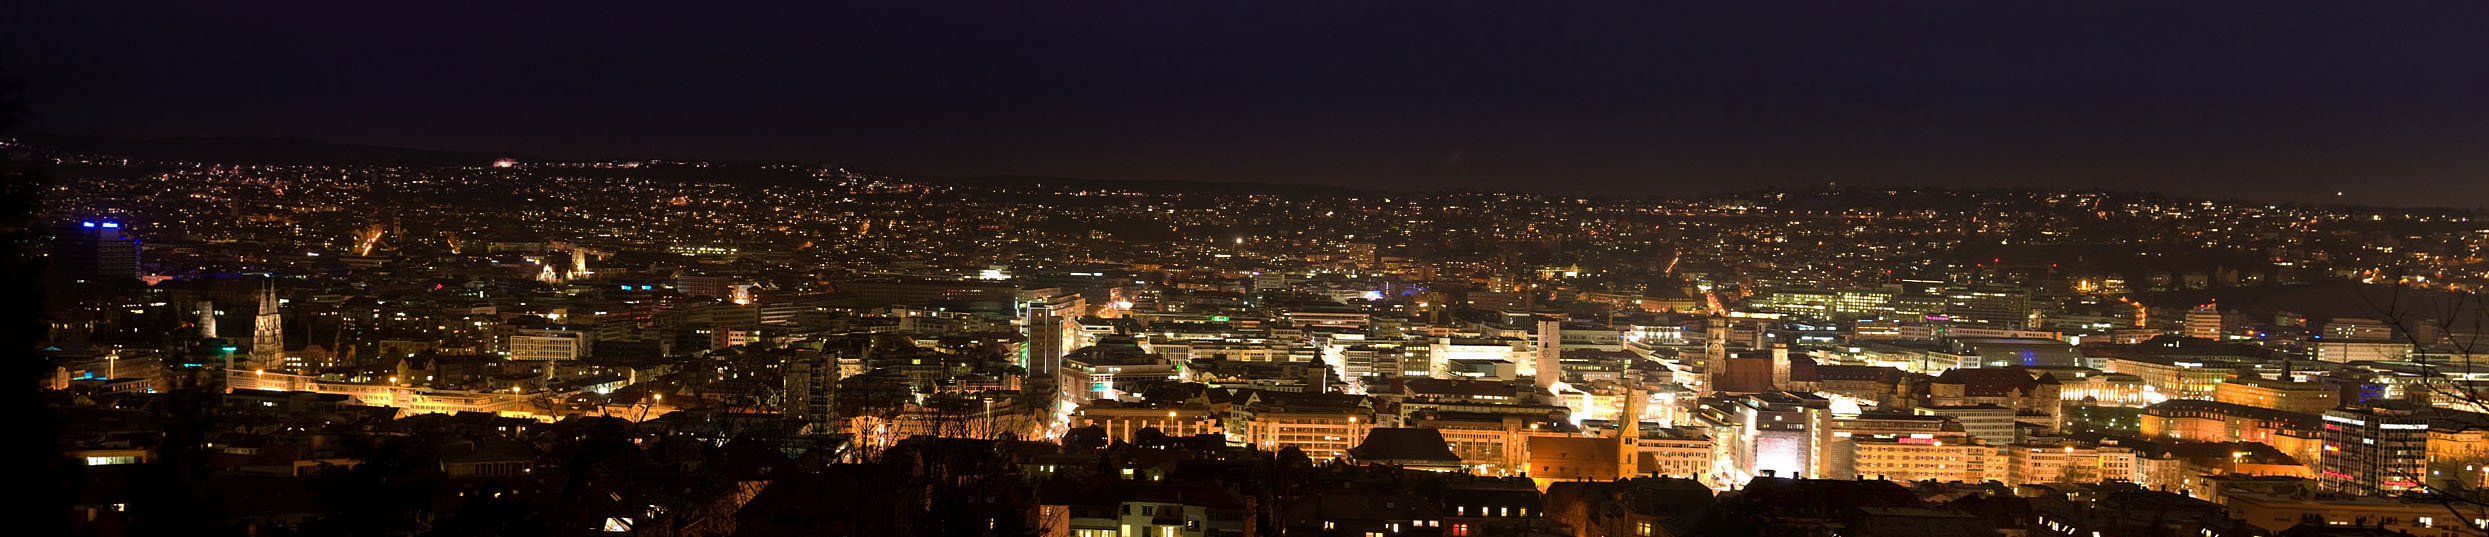 Stuttgart at night